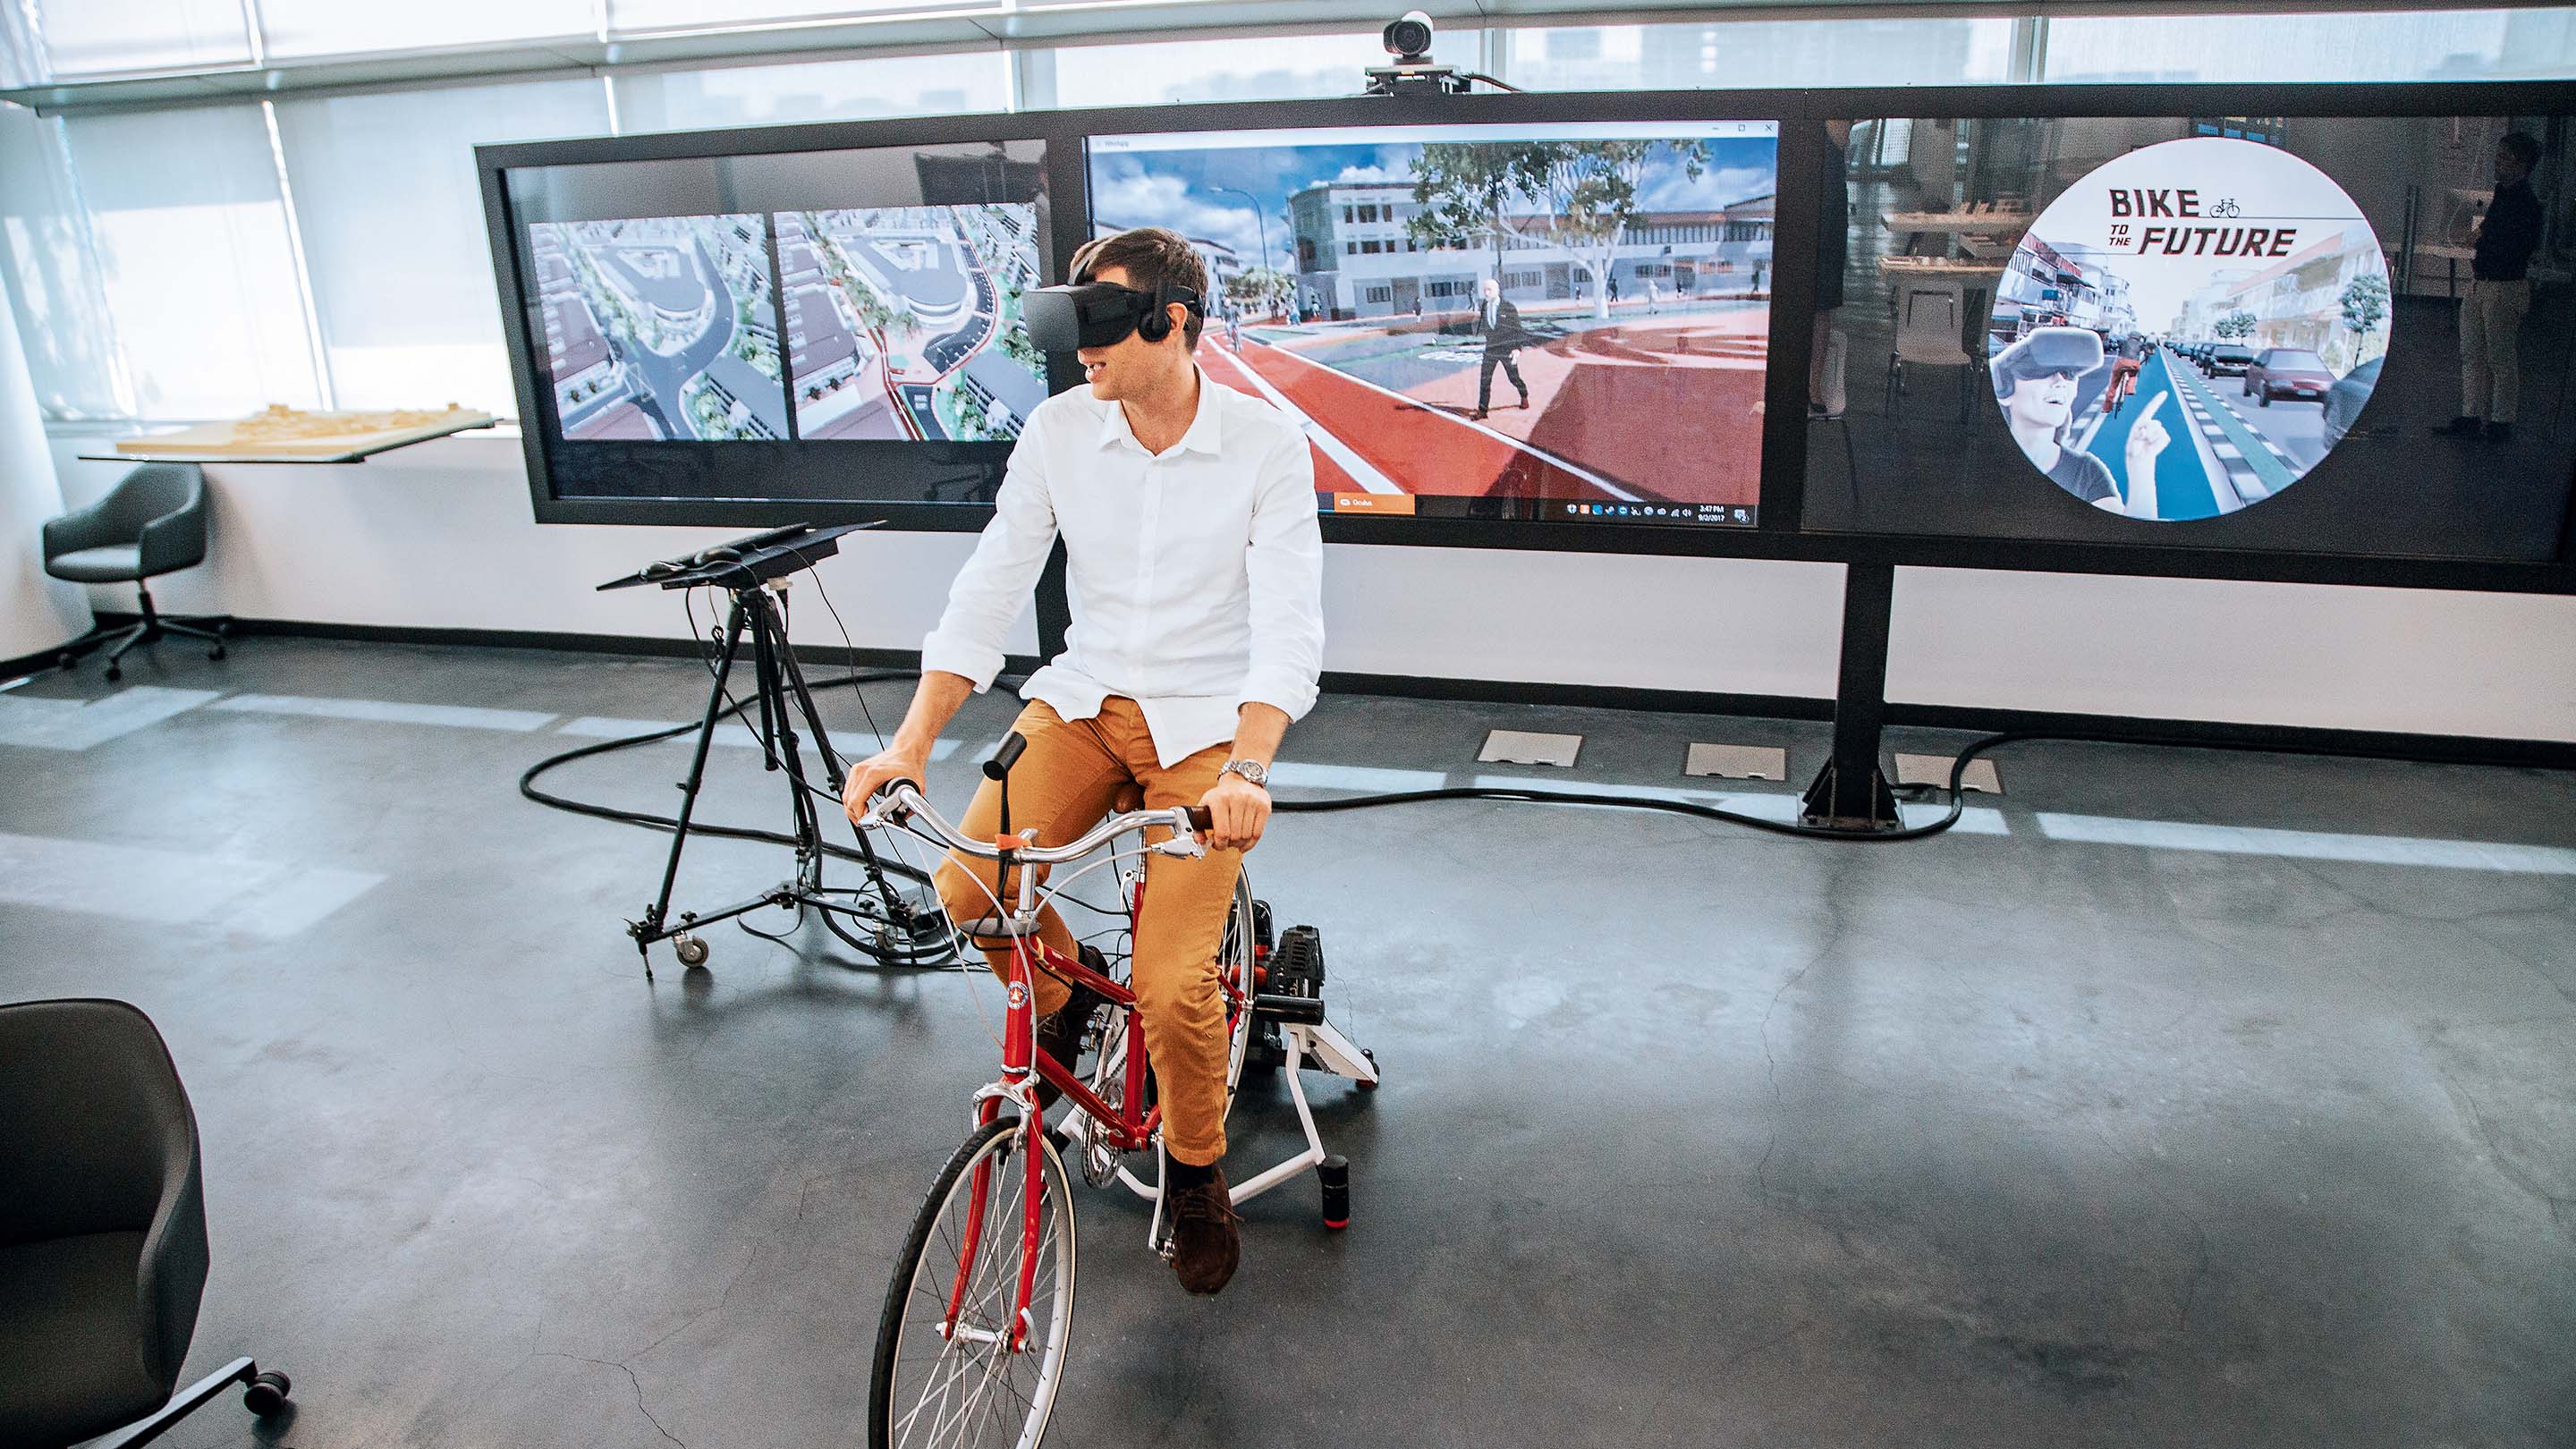 Ein Mann von der Universität Zürich probiert das VR-Erlebnis "Bike to the future" aus.